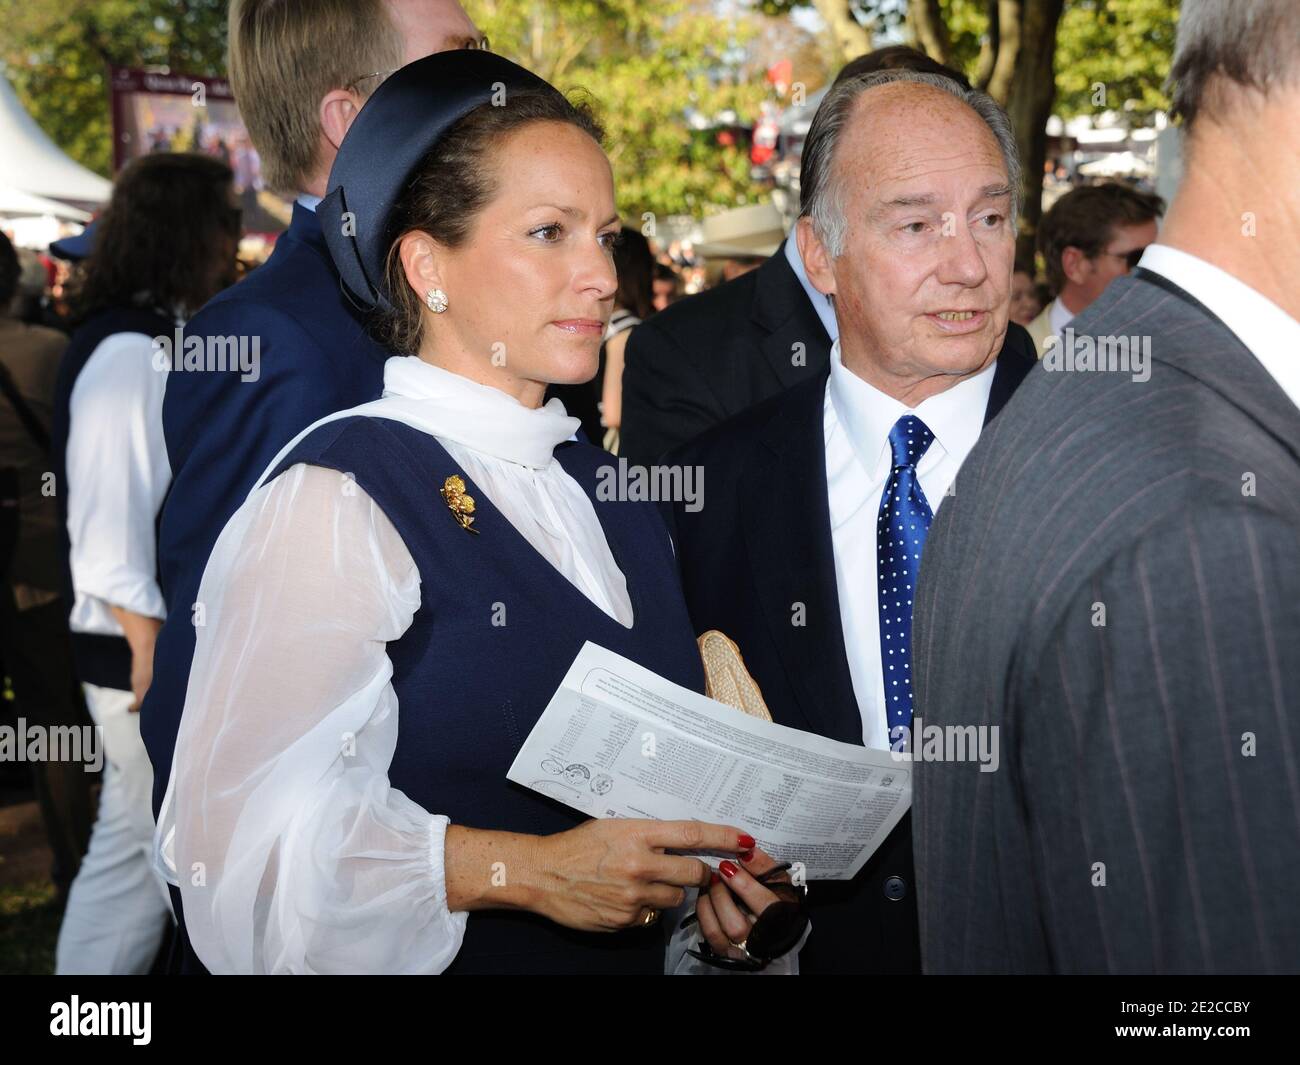 Son Altesse l'Aga Khan et Zahra Aga Khan assistaient à la 90e édition du prix Qatar Arc de Triomphe à l'hippodrome de Longchamp le 2 octobre 2011 à Paris, France. Photo d'Alban Wyters/ABACAPRESS.COM Banque D'Images